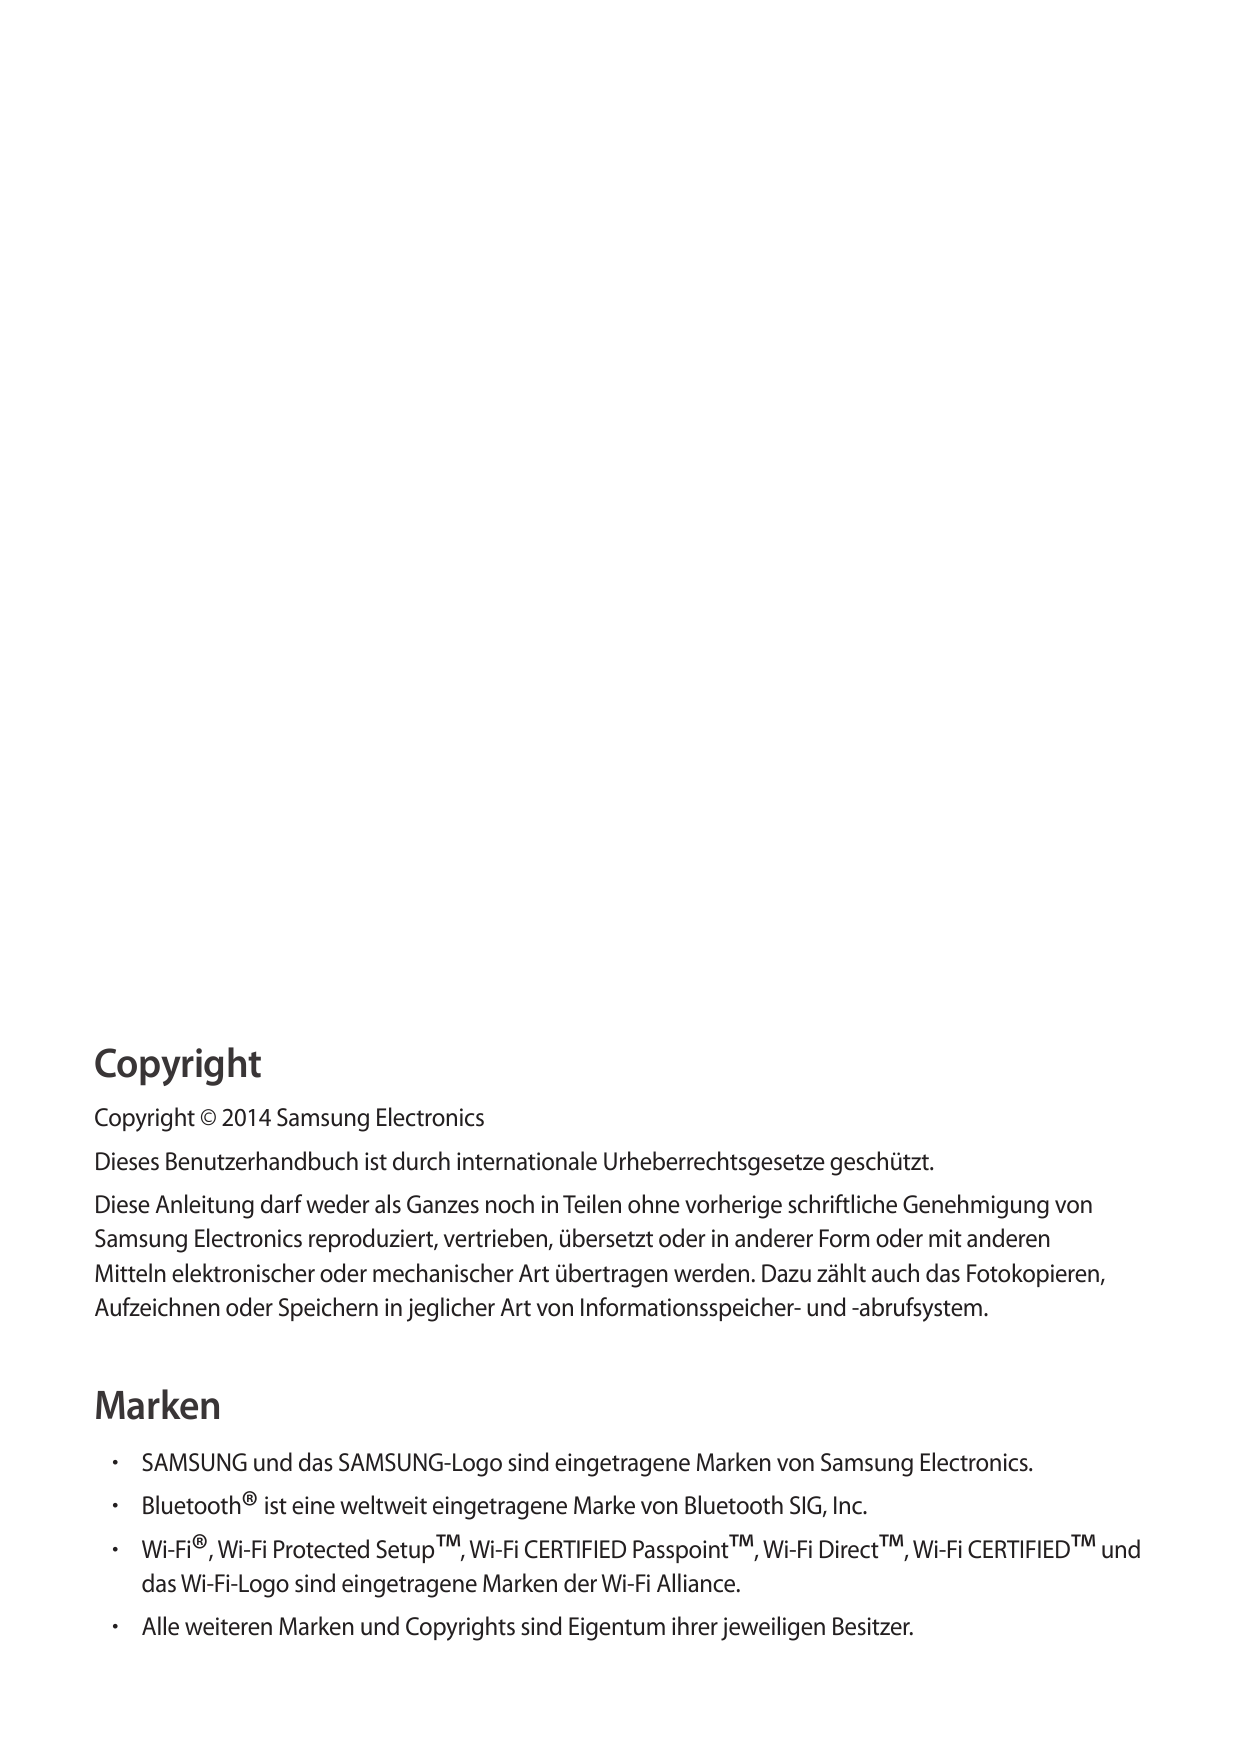 CopyrightCopyright © 2014 Samsung ElectronicsDieses Benutzerhandbuch ist durch internationale Urheberrechtsgesetze geschützt.Die